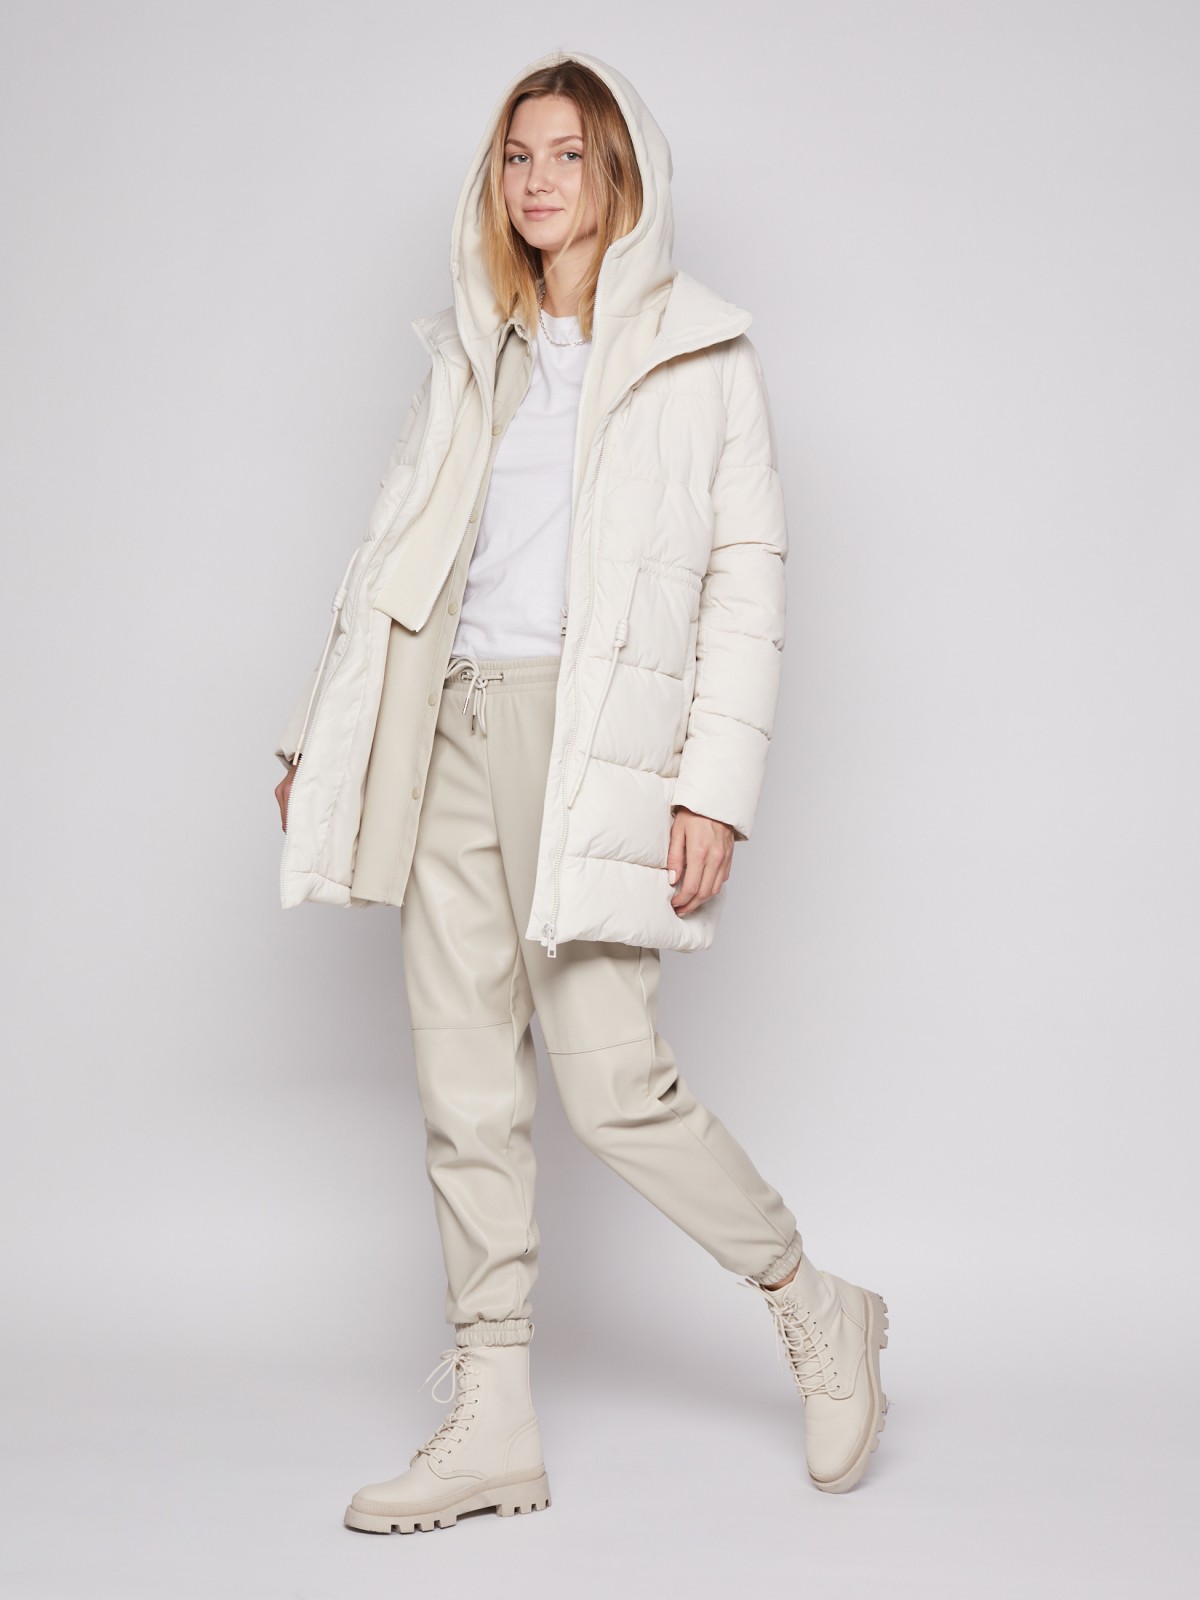 Утеплённое пальто Oversize с капюшоном и манишкой zolla 02212522J044, цвет молоко, размер XS - фото 2